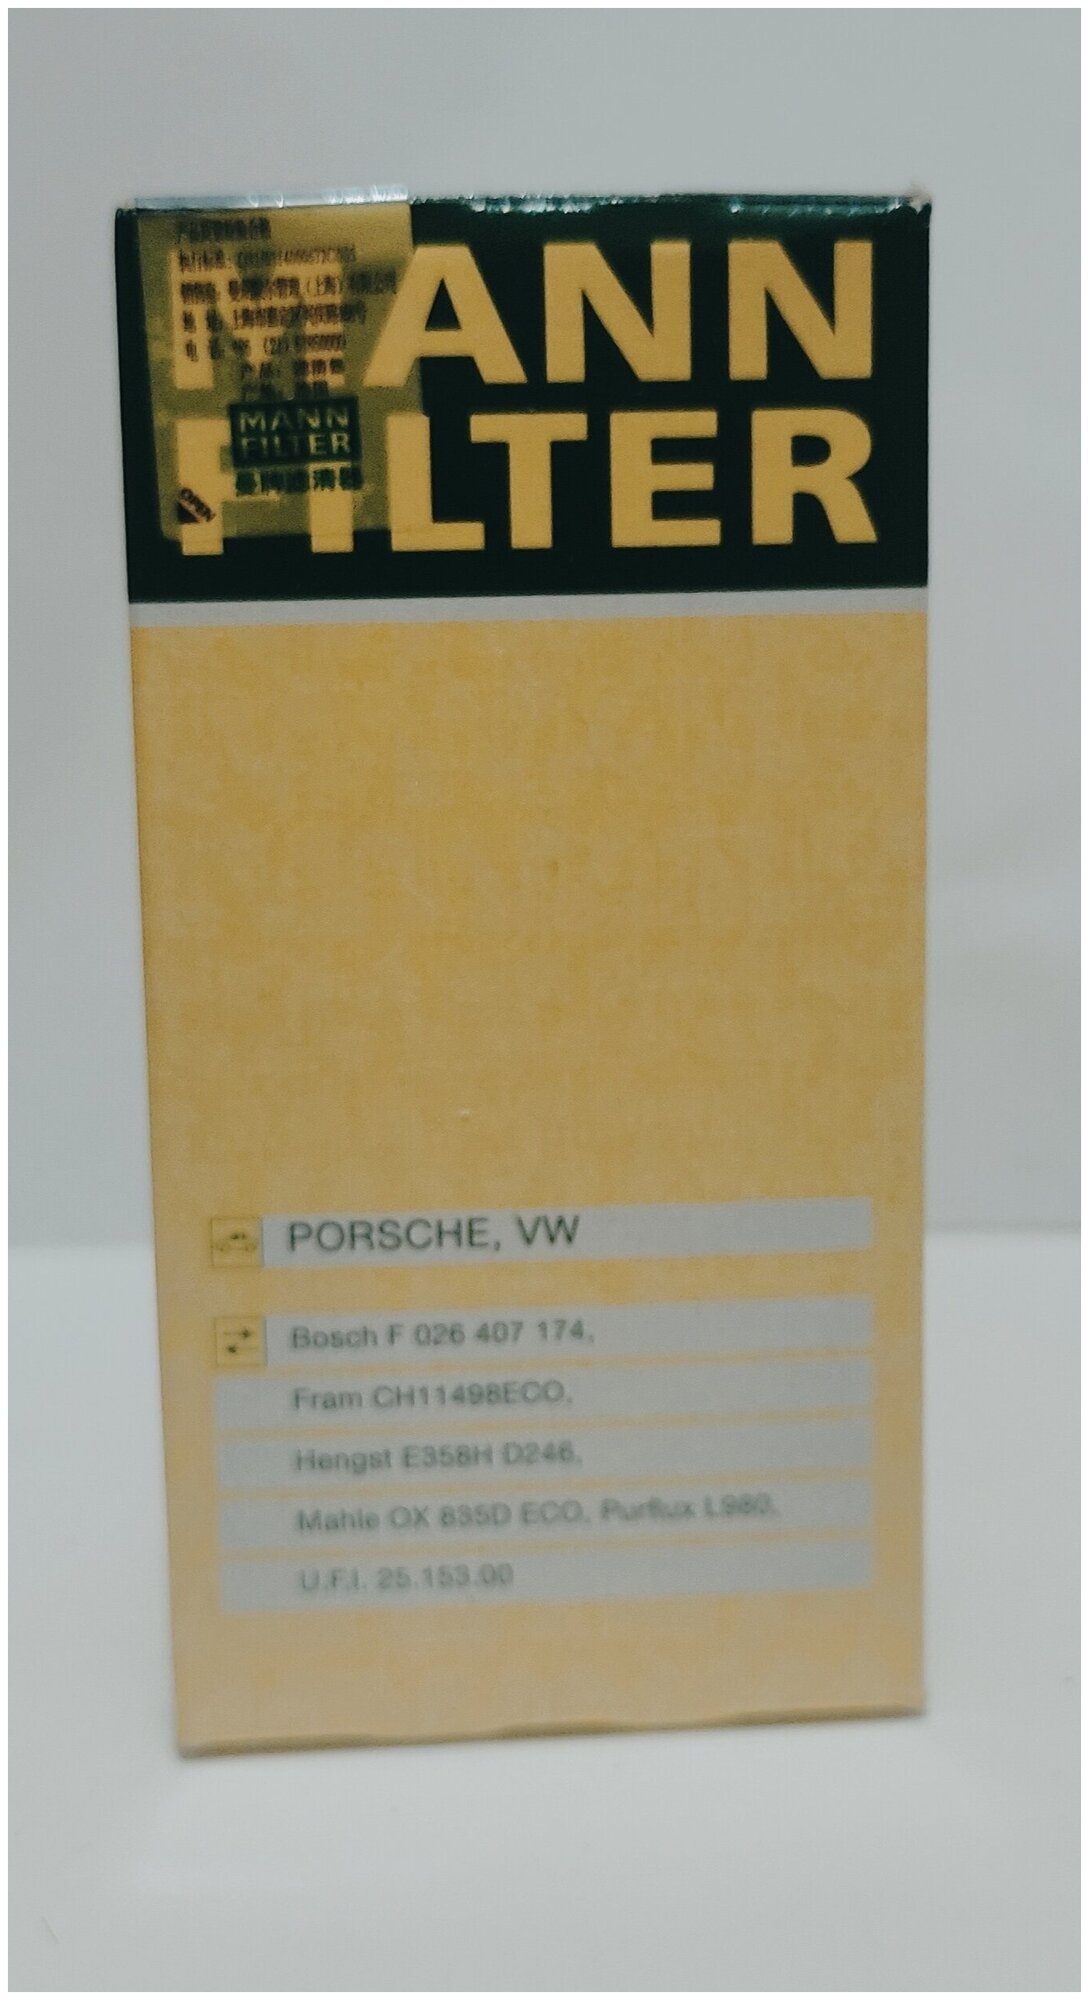 Масляный фильтр Mann-Filter - фото №4